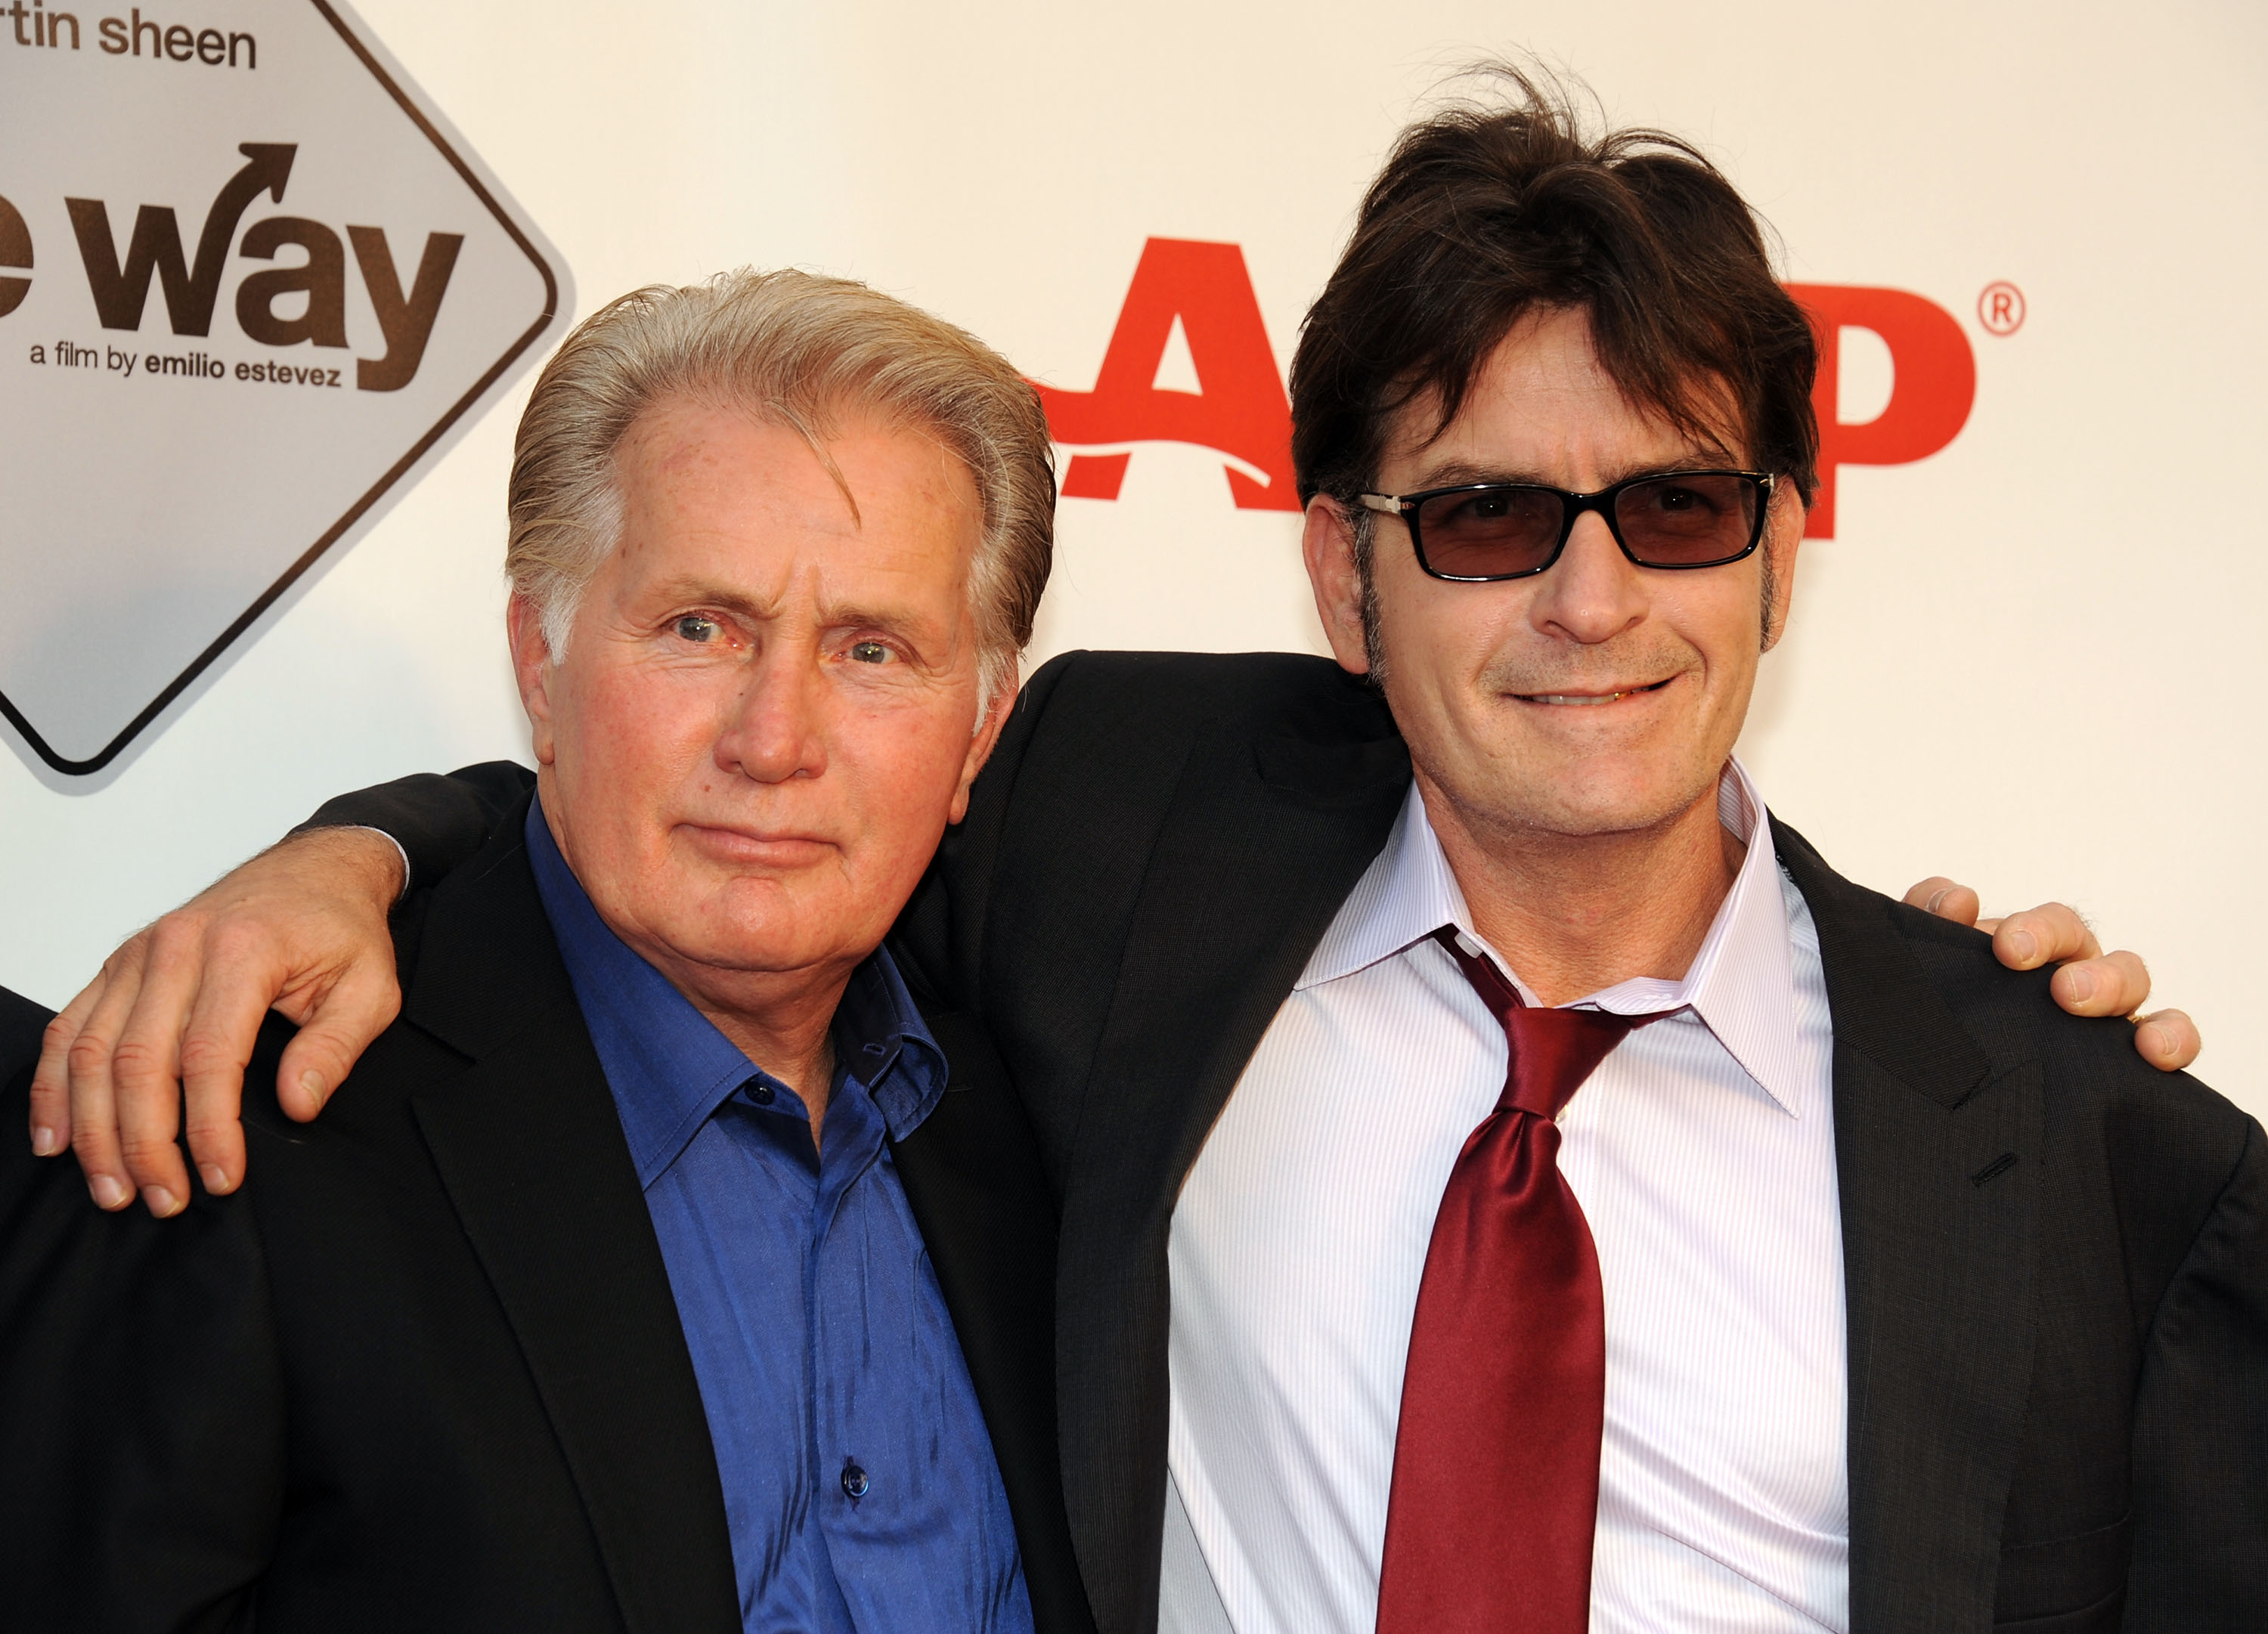 Martin Sheen y Charlie Sheen asisten a la proyección de "The Way" el 23 de septiembre de 2011 en Los Ángeles, California | Foto: Getty Images